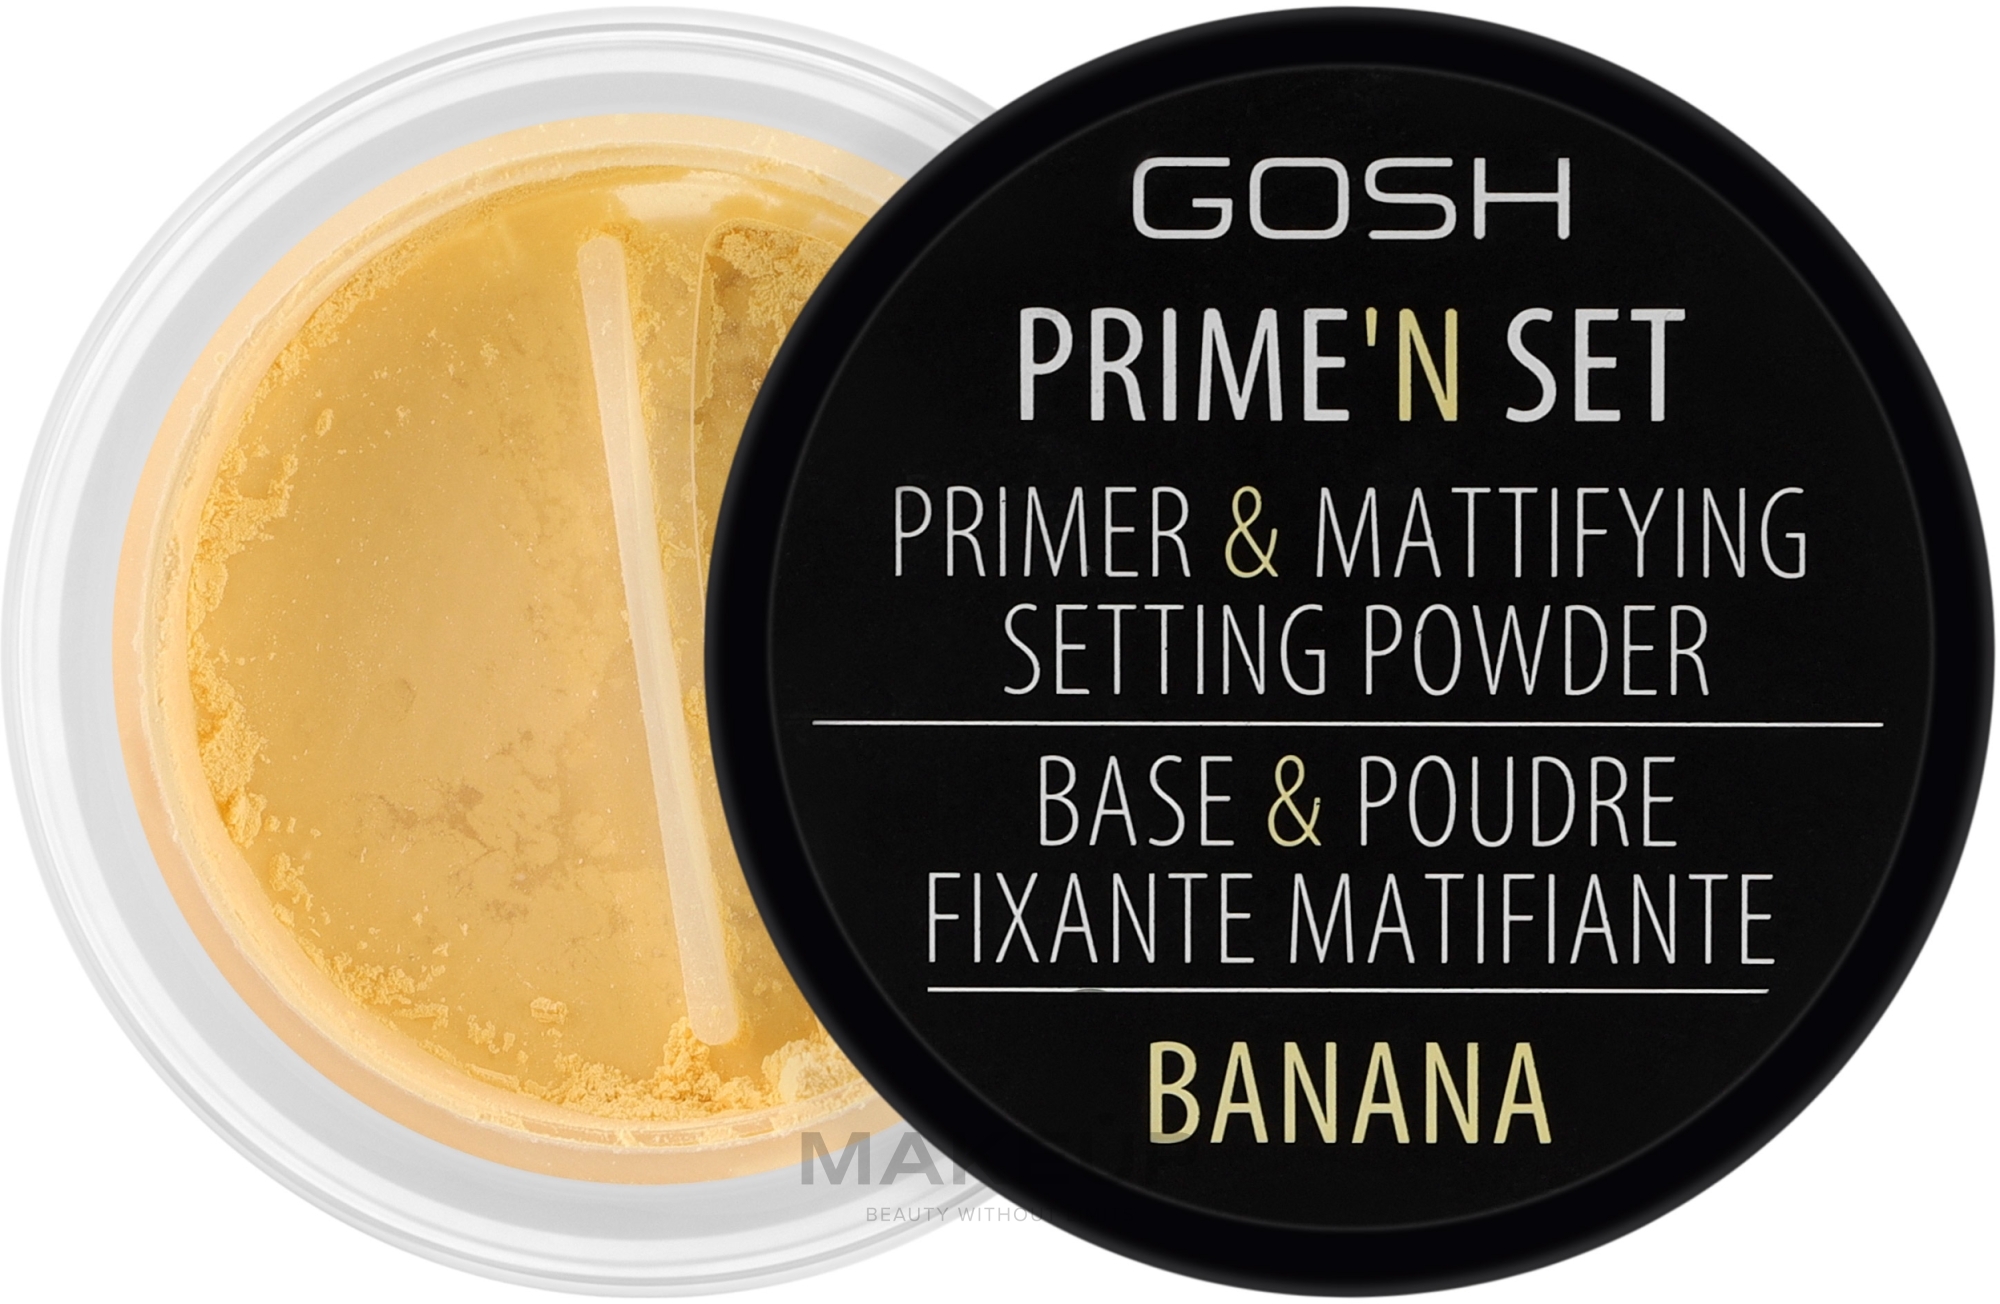 Matująco-utrwalająca baza i puder do twarzy - Gosh Copenhagen Primeʼn Set Primer & Mattifying Setting Powder — Zdjęcie 002 - Banana